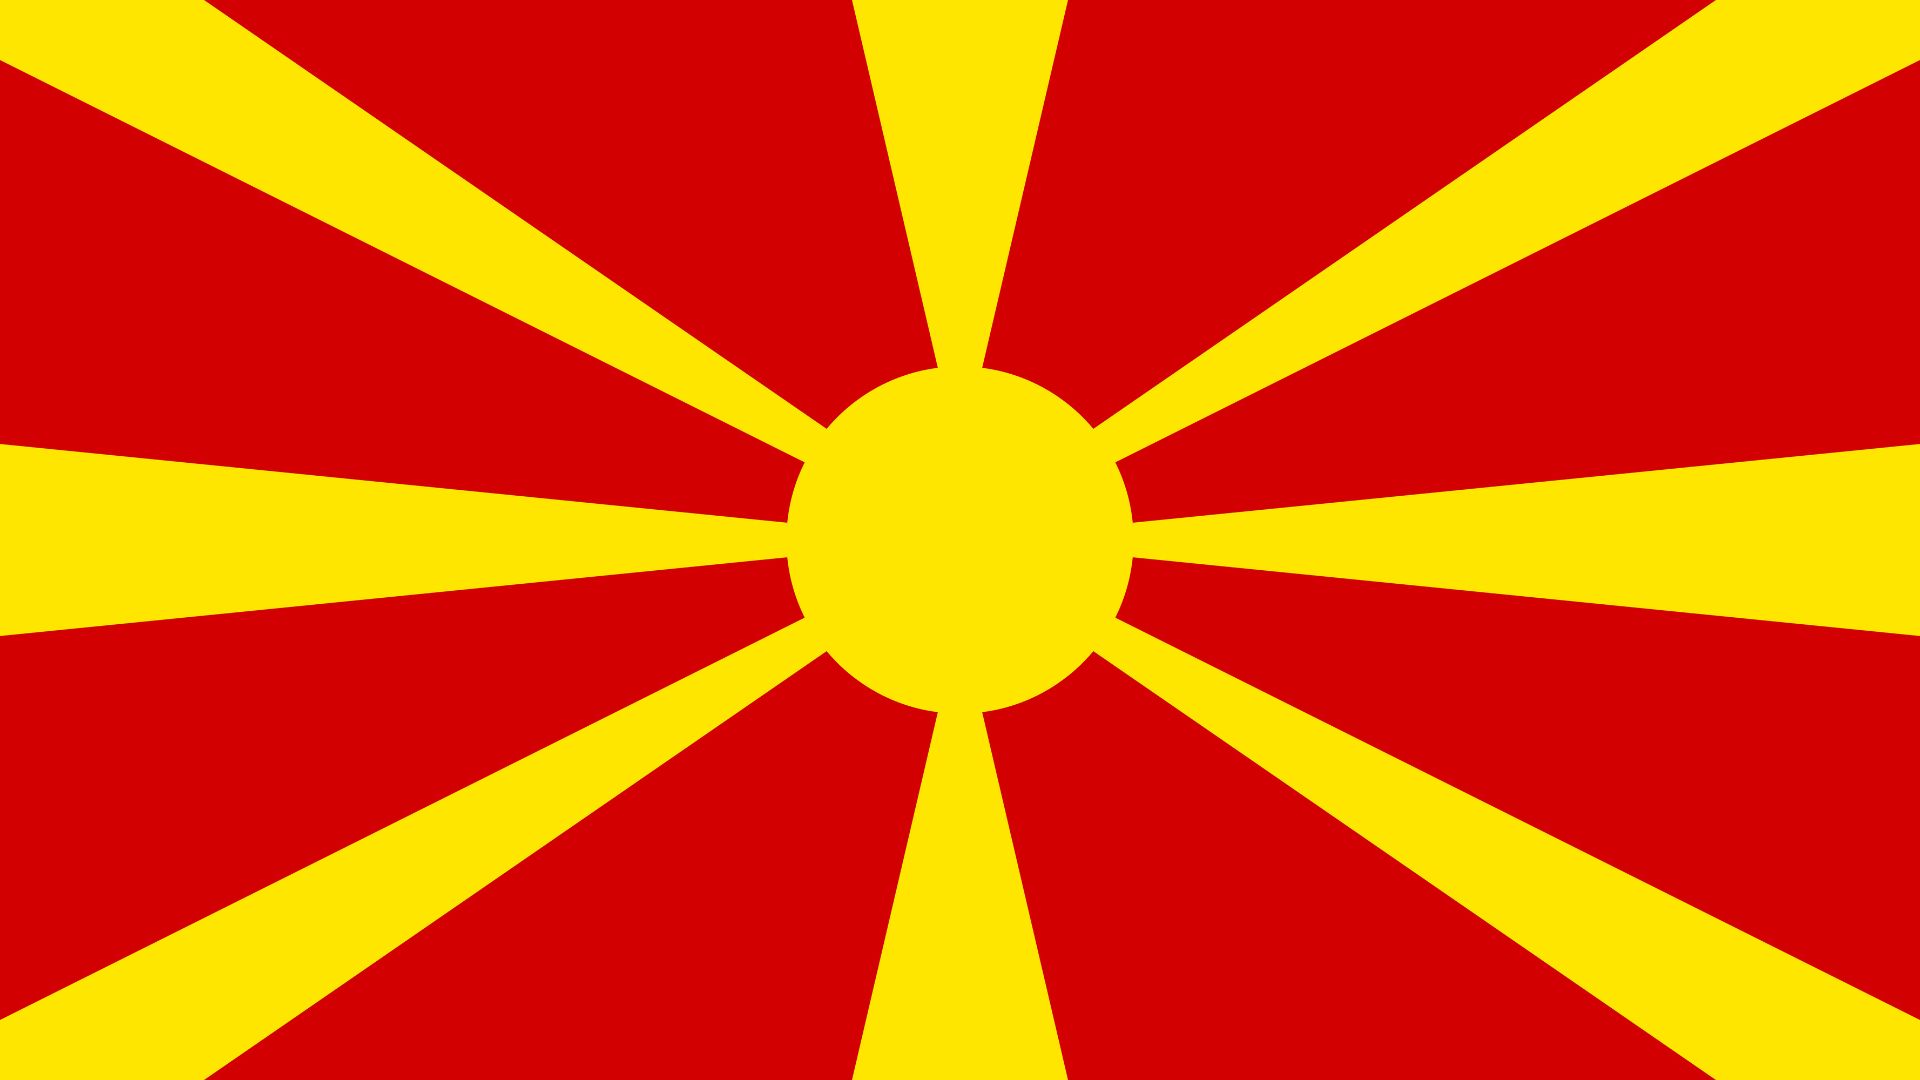 A bandeira nacional da Macedônia do Norte possui uma estrela de ouro de oito pontas sobre fundo vermelho.